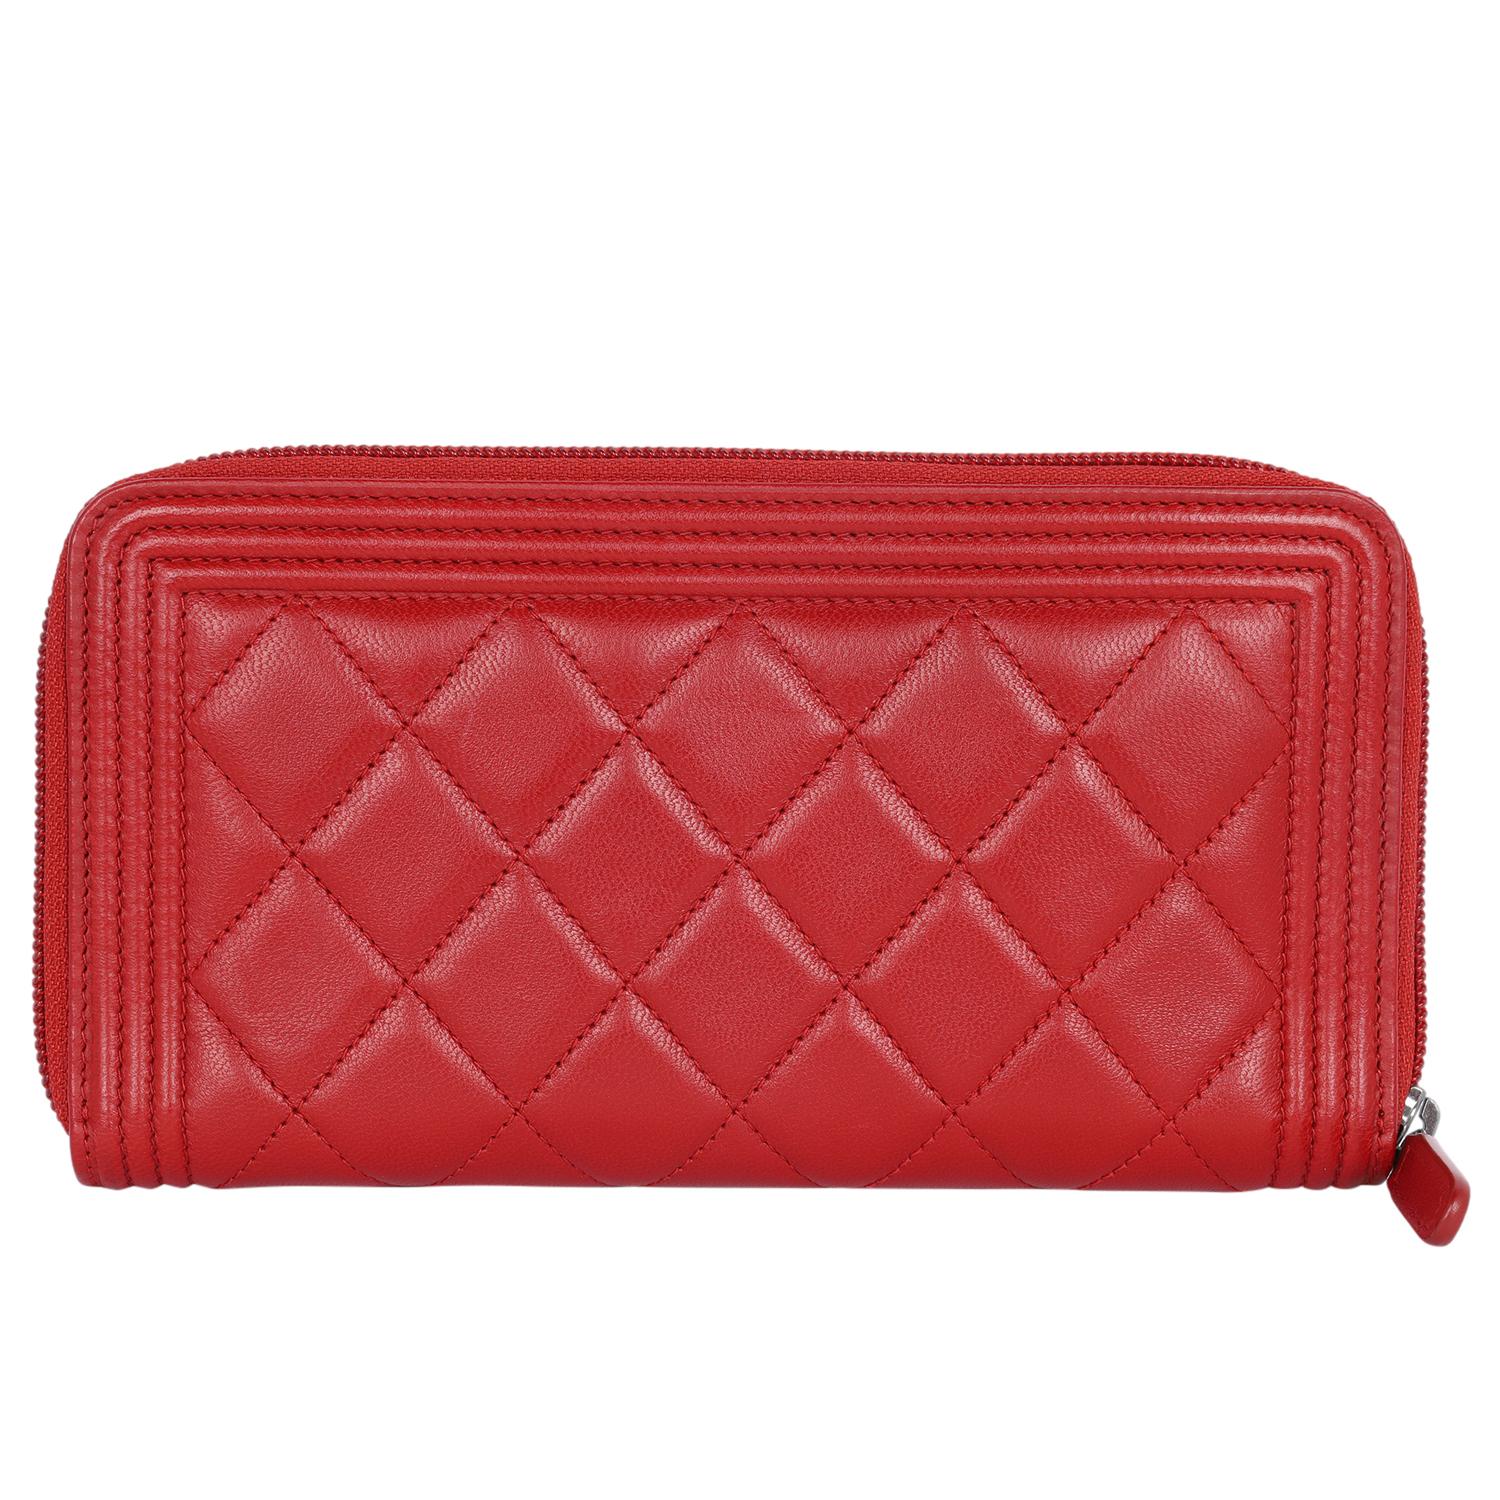 Authentische, gebrauchte Chanel Junge Lammfell Diamant gesteppt Brieftasche in rot. Mit rautenförmig gestepptem, luxuriösem rotem Leder mit silbernem Chanel CC-Logo, Reißverschluss, roter Zuglasche, großem Innenraum mit  8 Steckfächer, Steckfächer